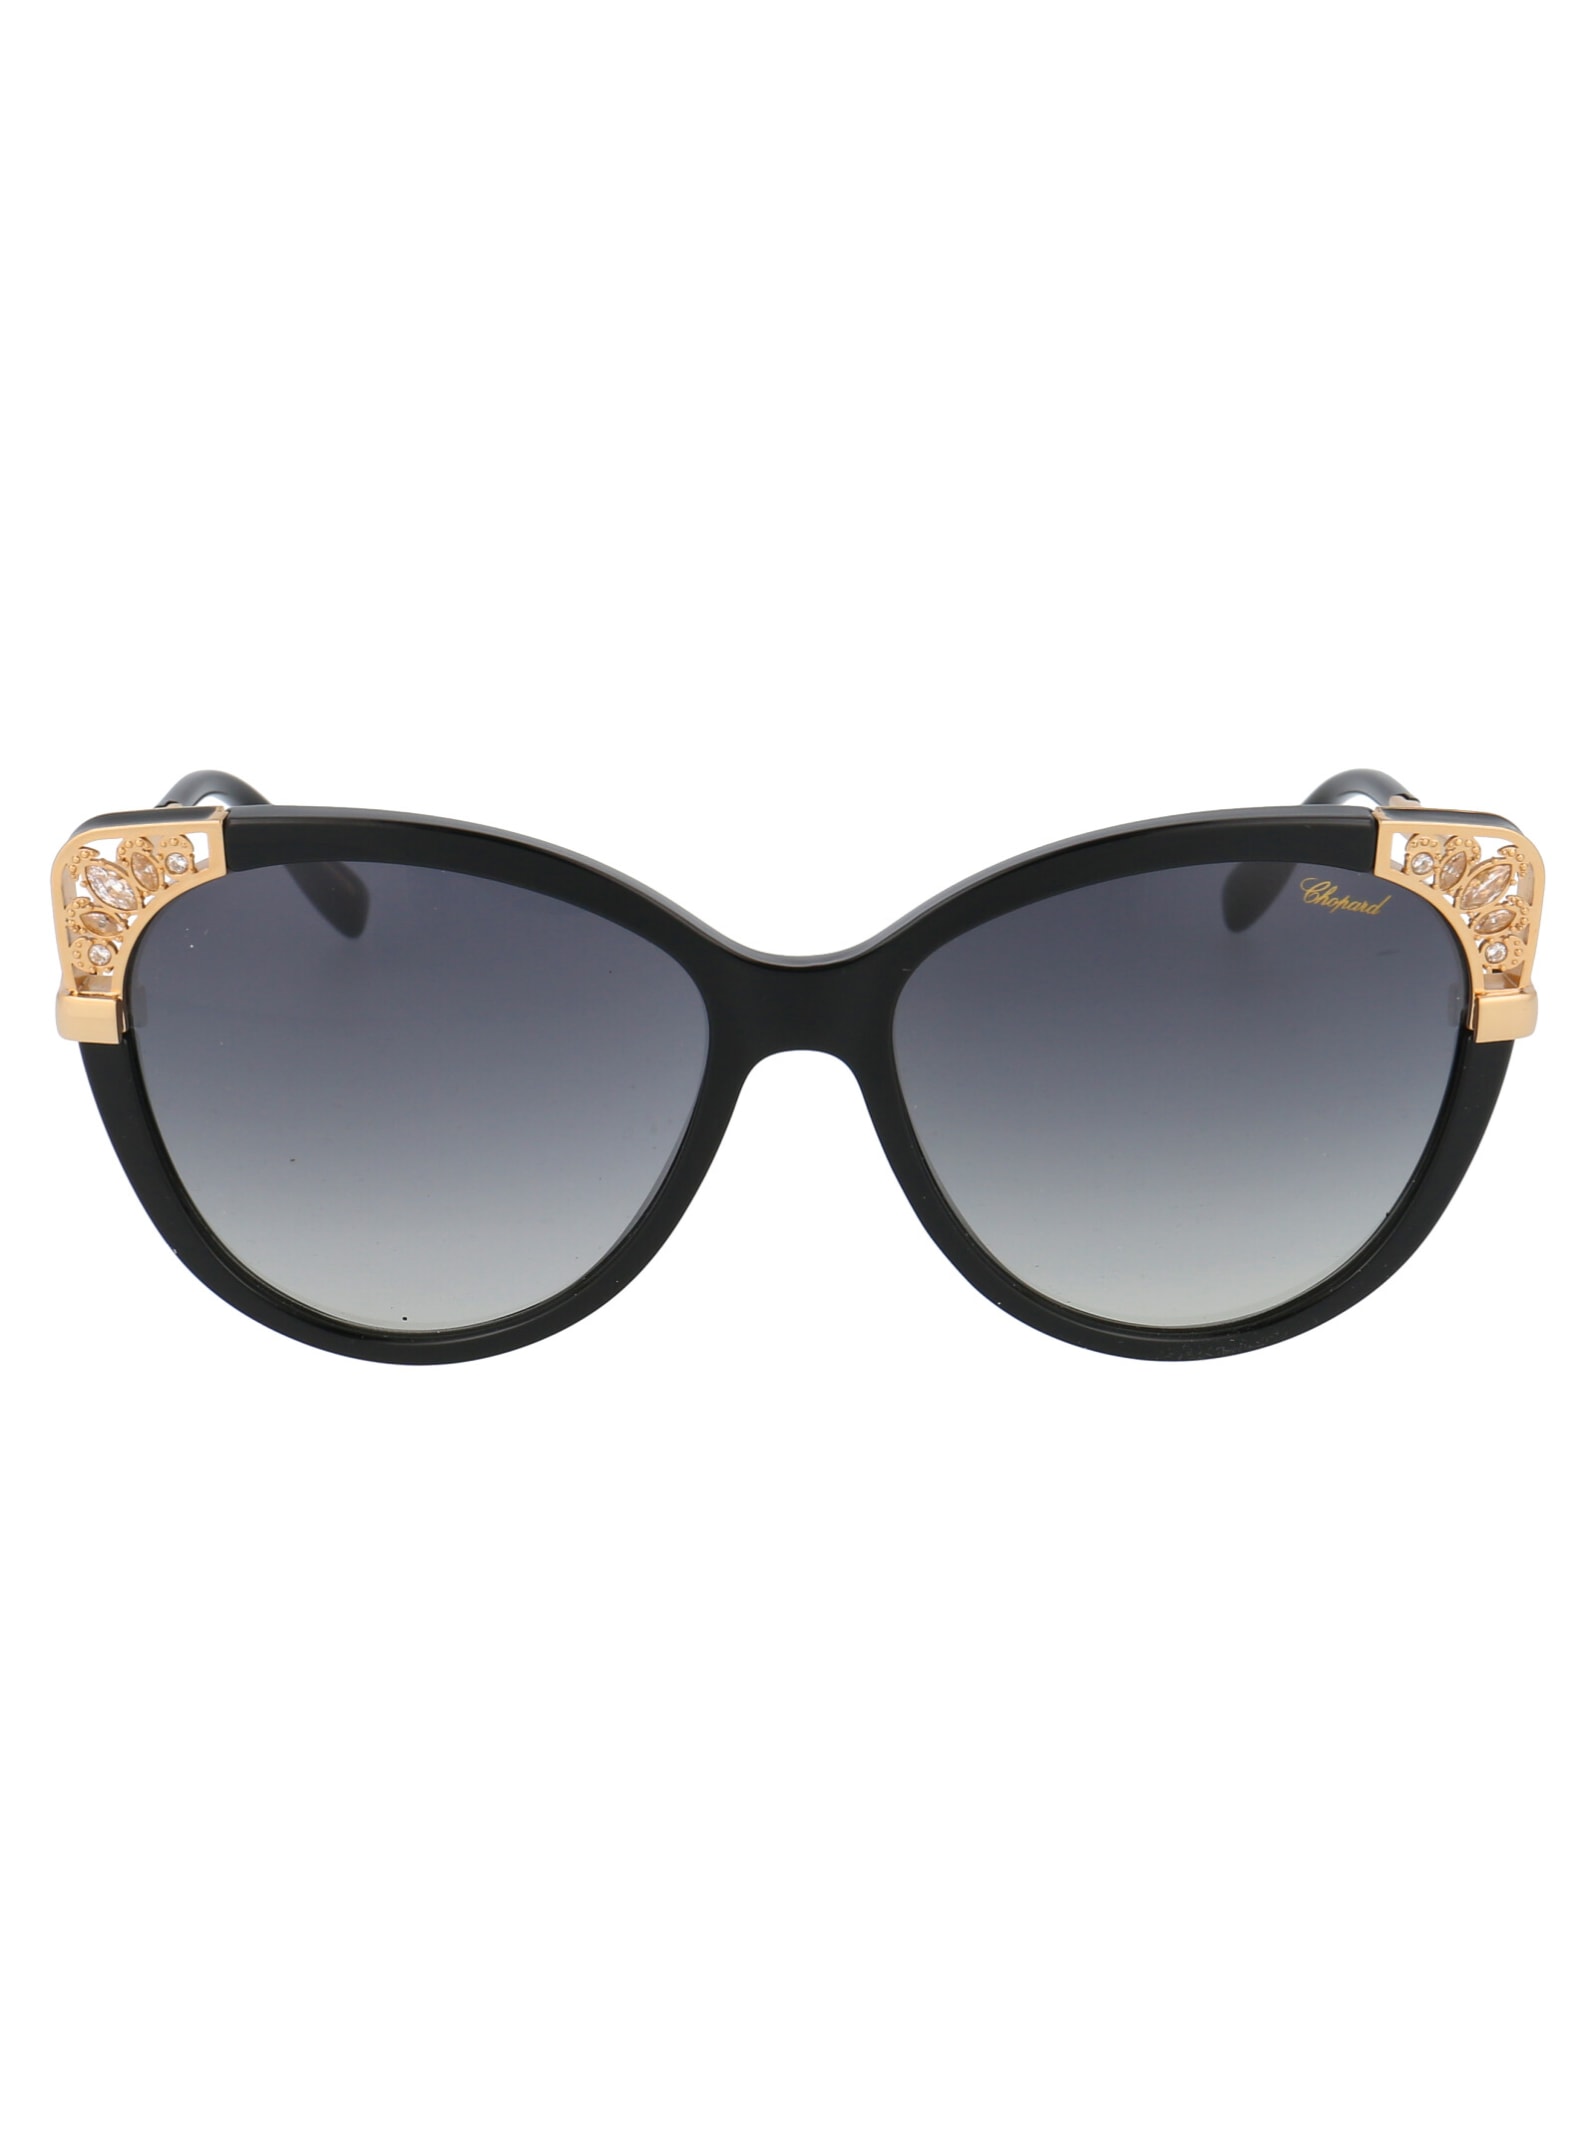 Chopard Sch233r Sunglasses